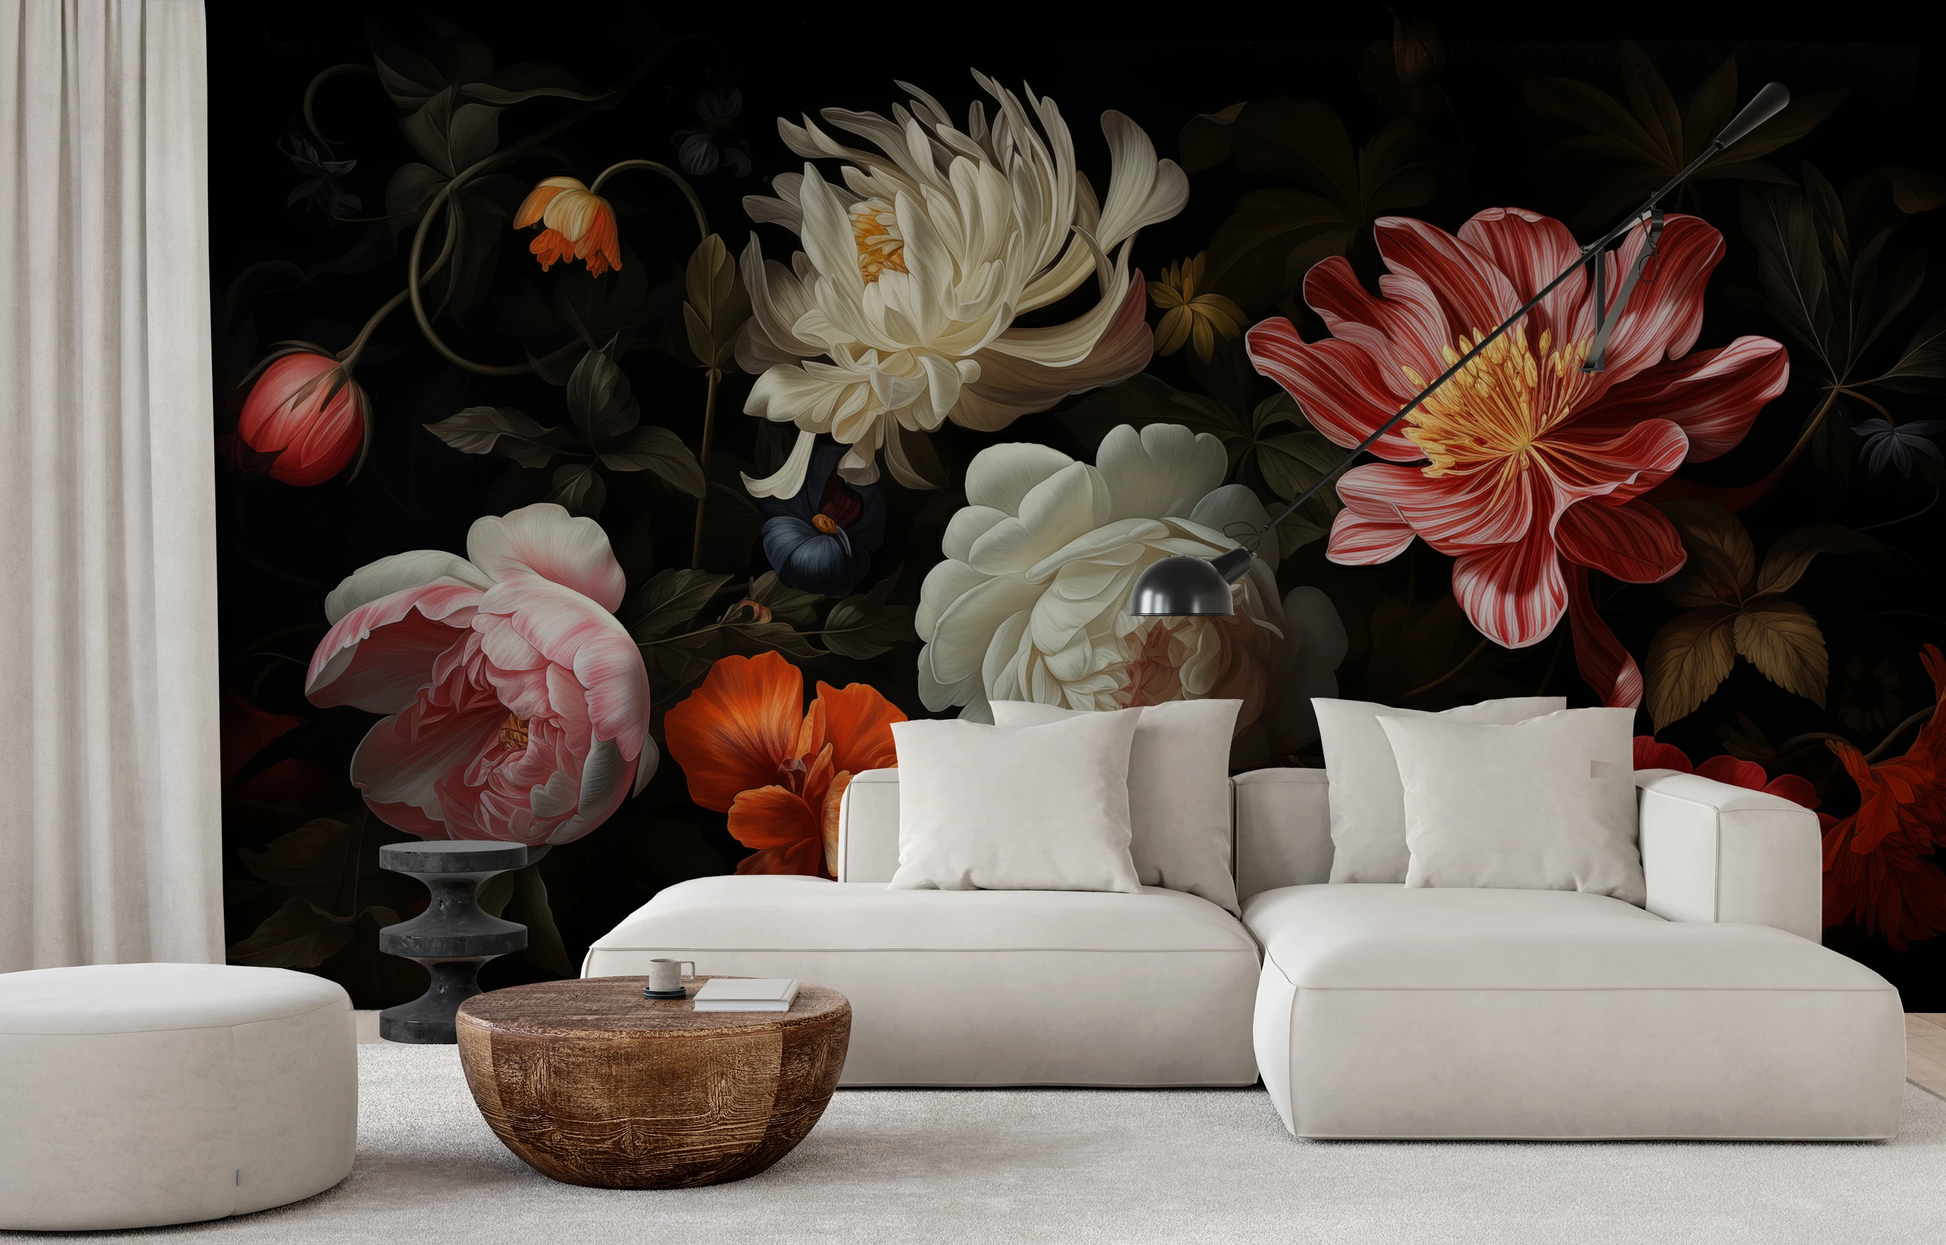 Wzór fototapety malowanej o nazwie Dutch Floral Masterpiece pokazanej w aranżacji wnętrza.